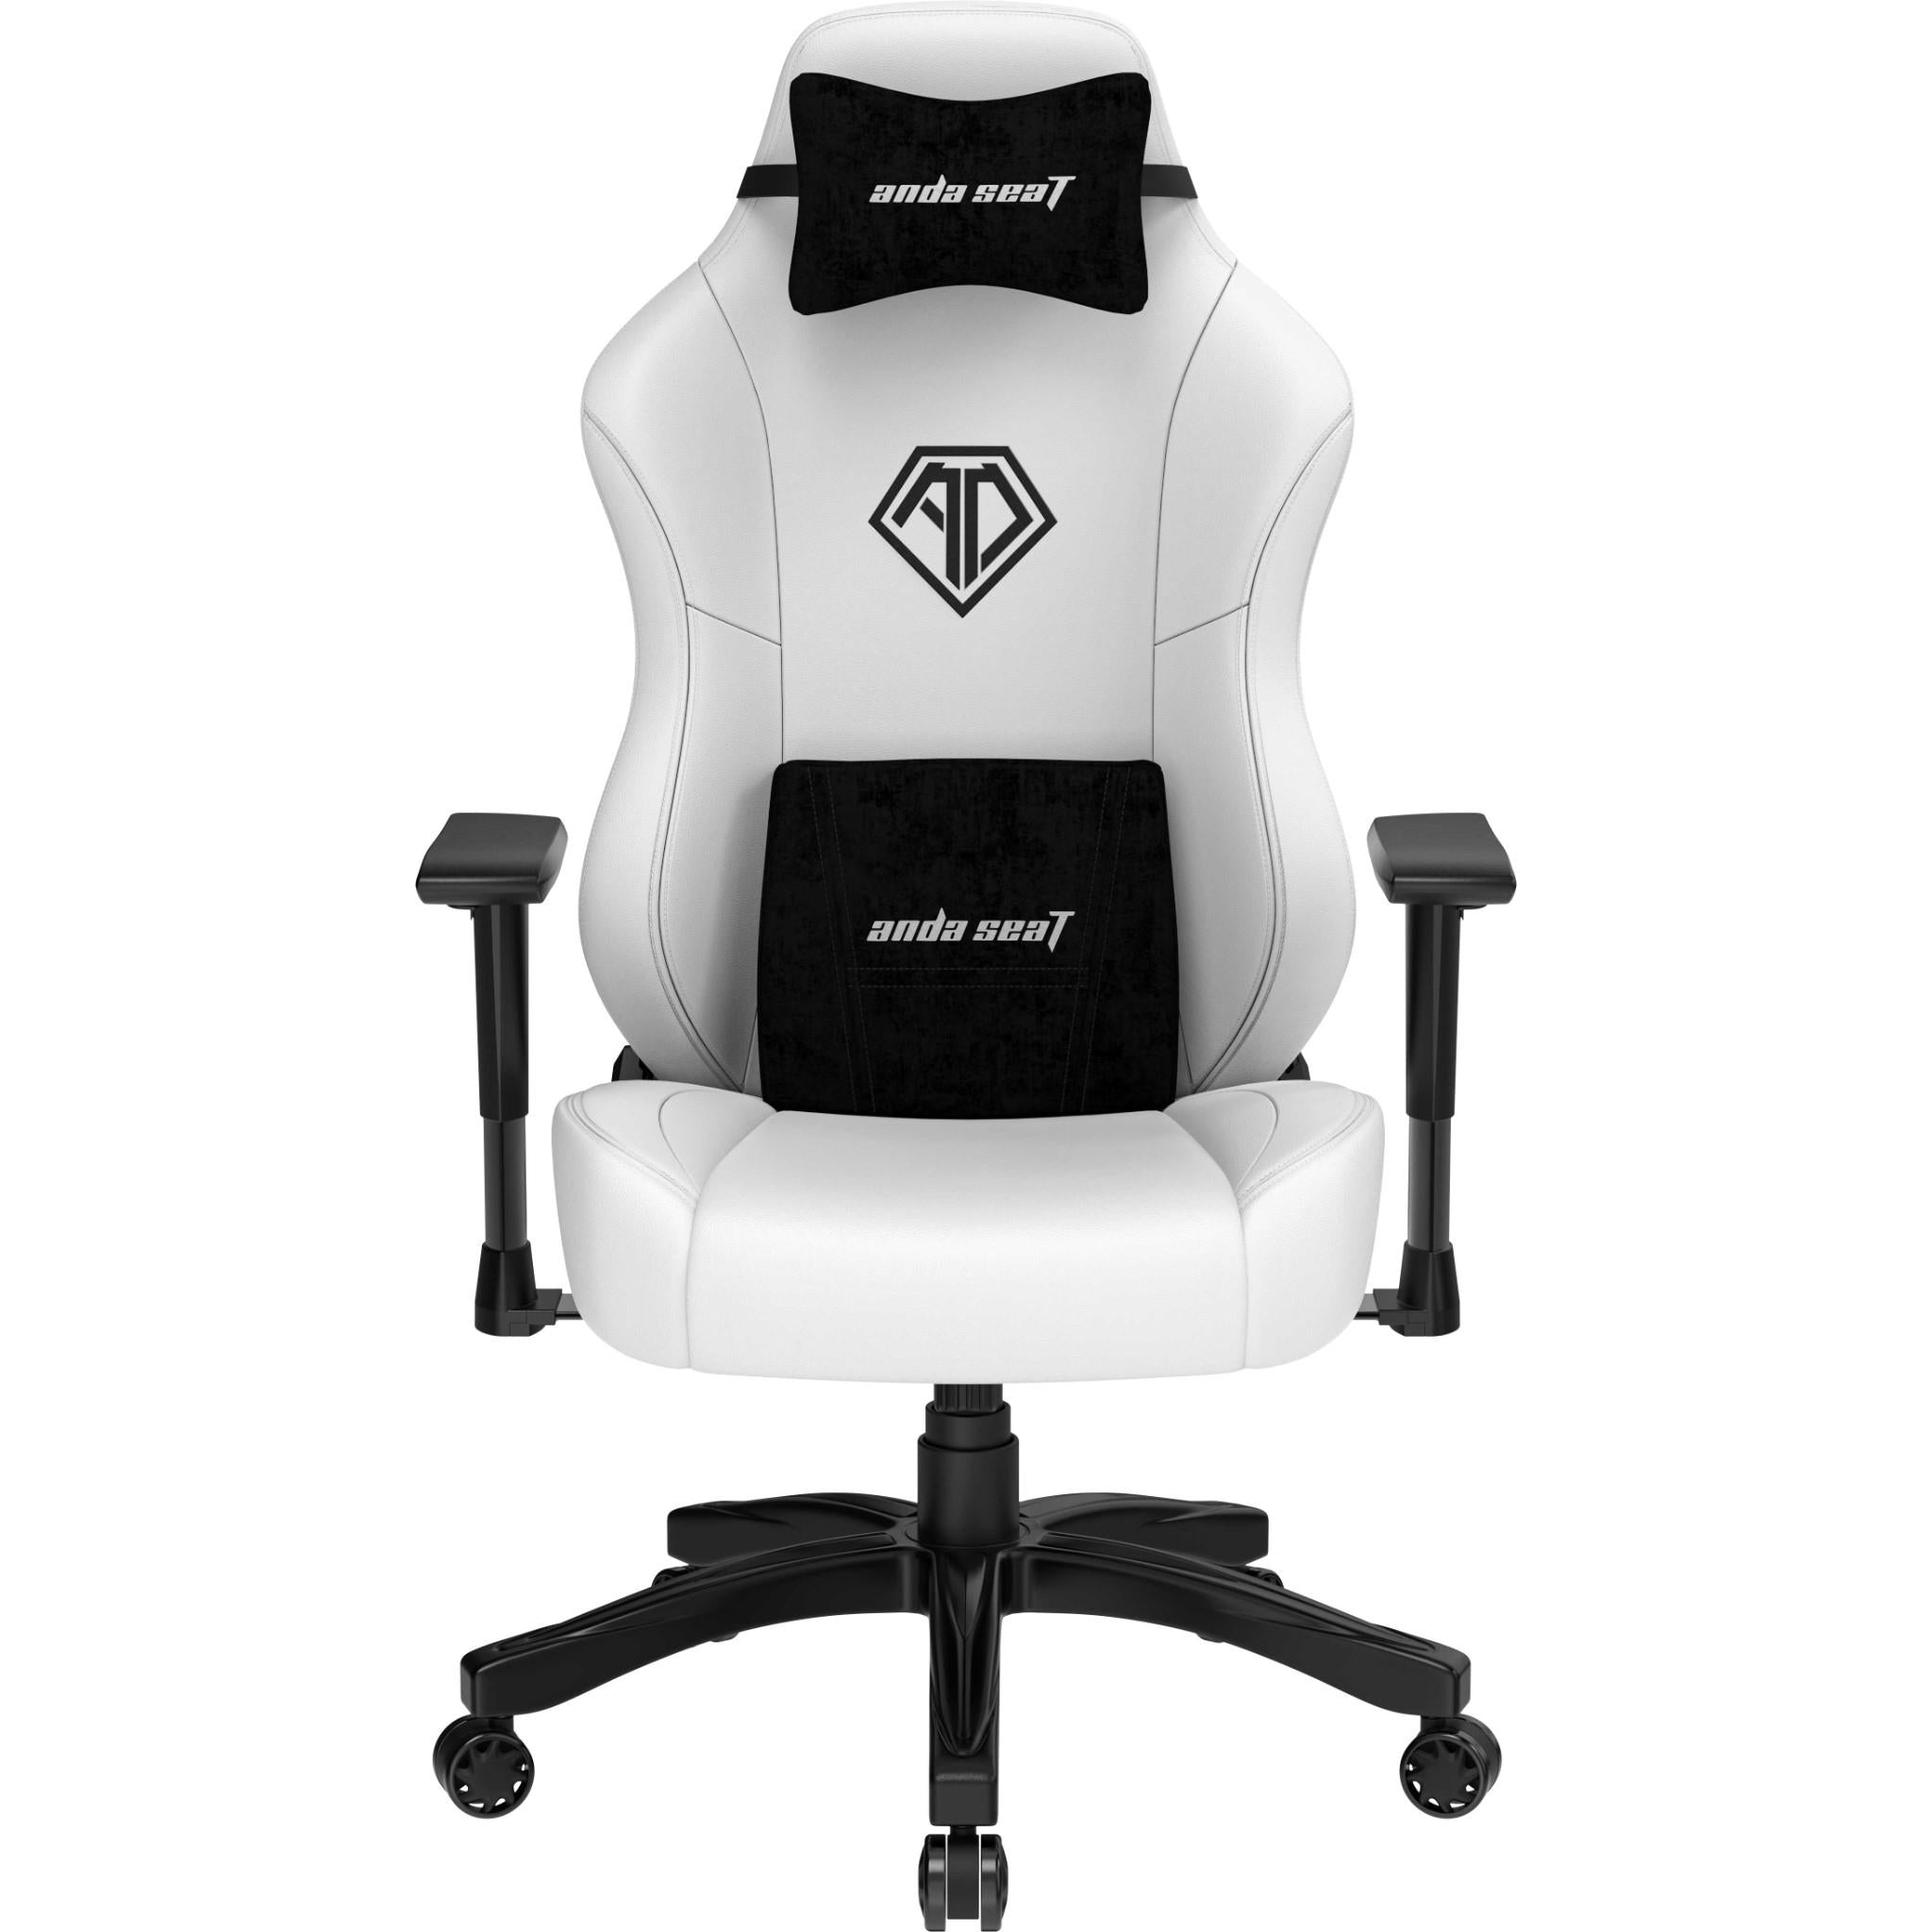 Anda Seat Phantom 3 Gaming Chair White (Large) - JB Hi-Fi